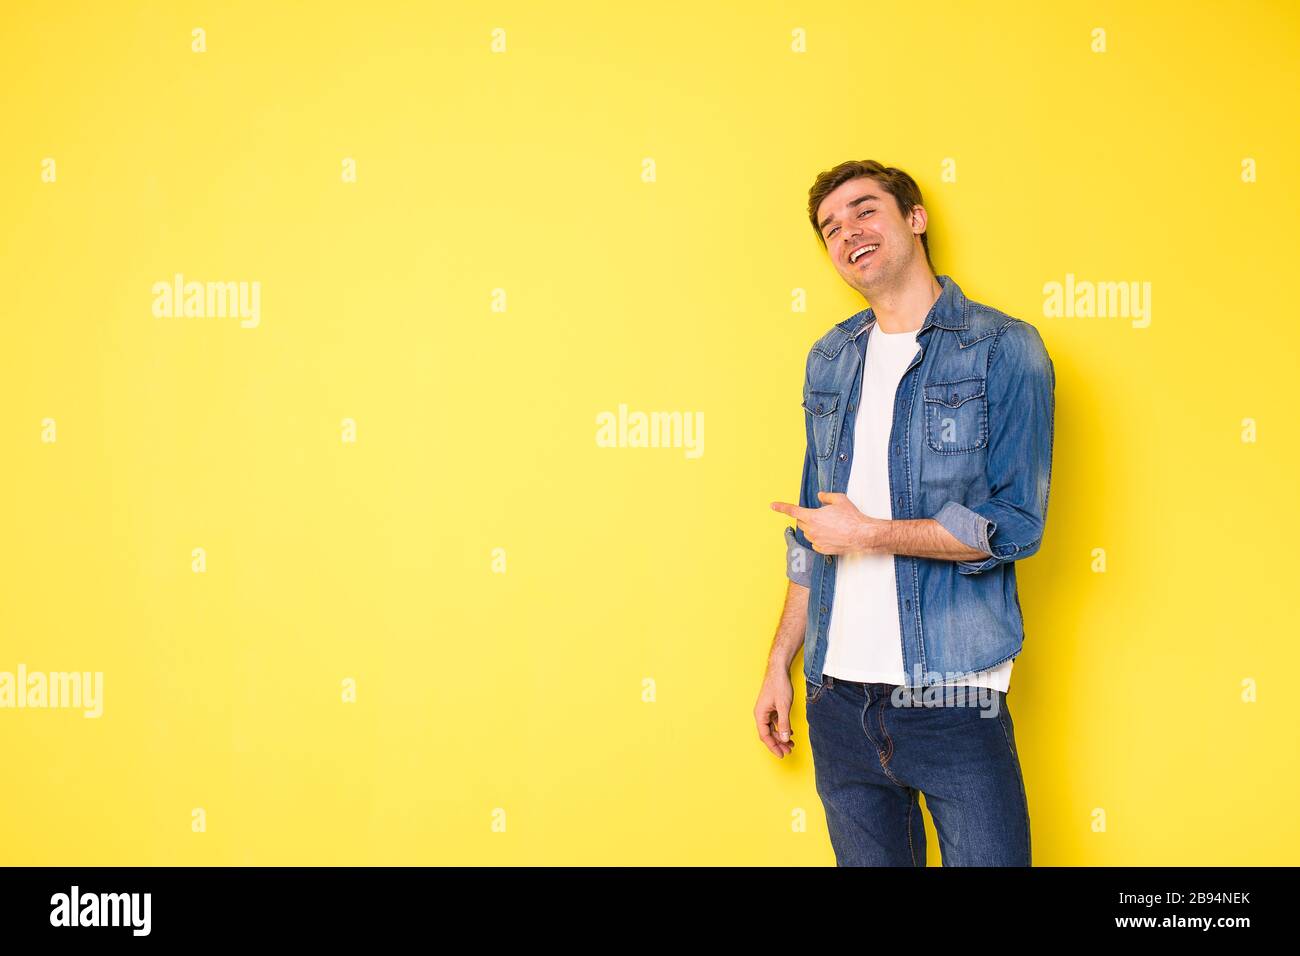 Junge Männer, die auf gelbem Hintergrund stehen und auf eine Seite des Rahmens zeigen oder schauen, freier Platz für Text Stockfoto